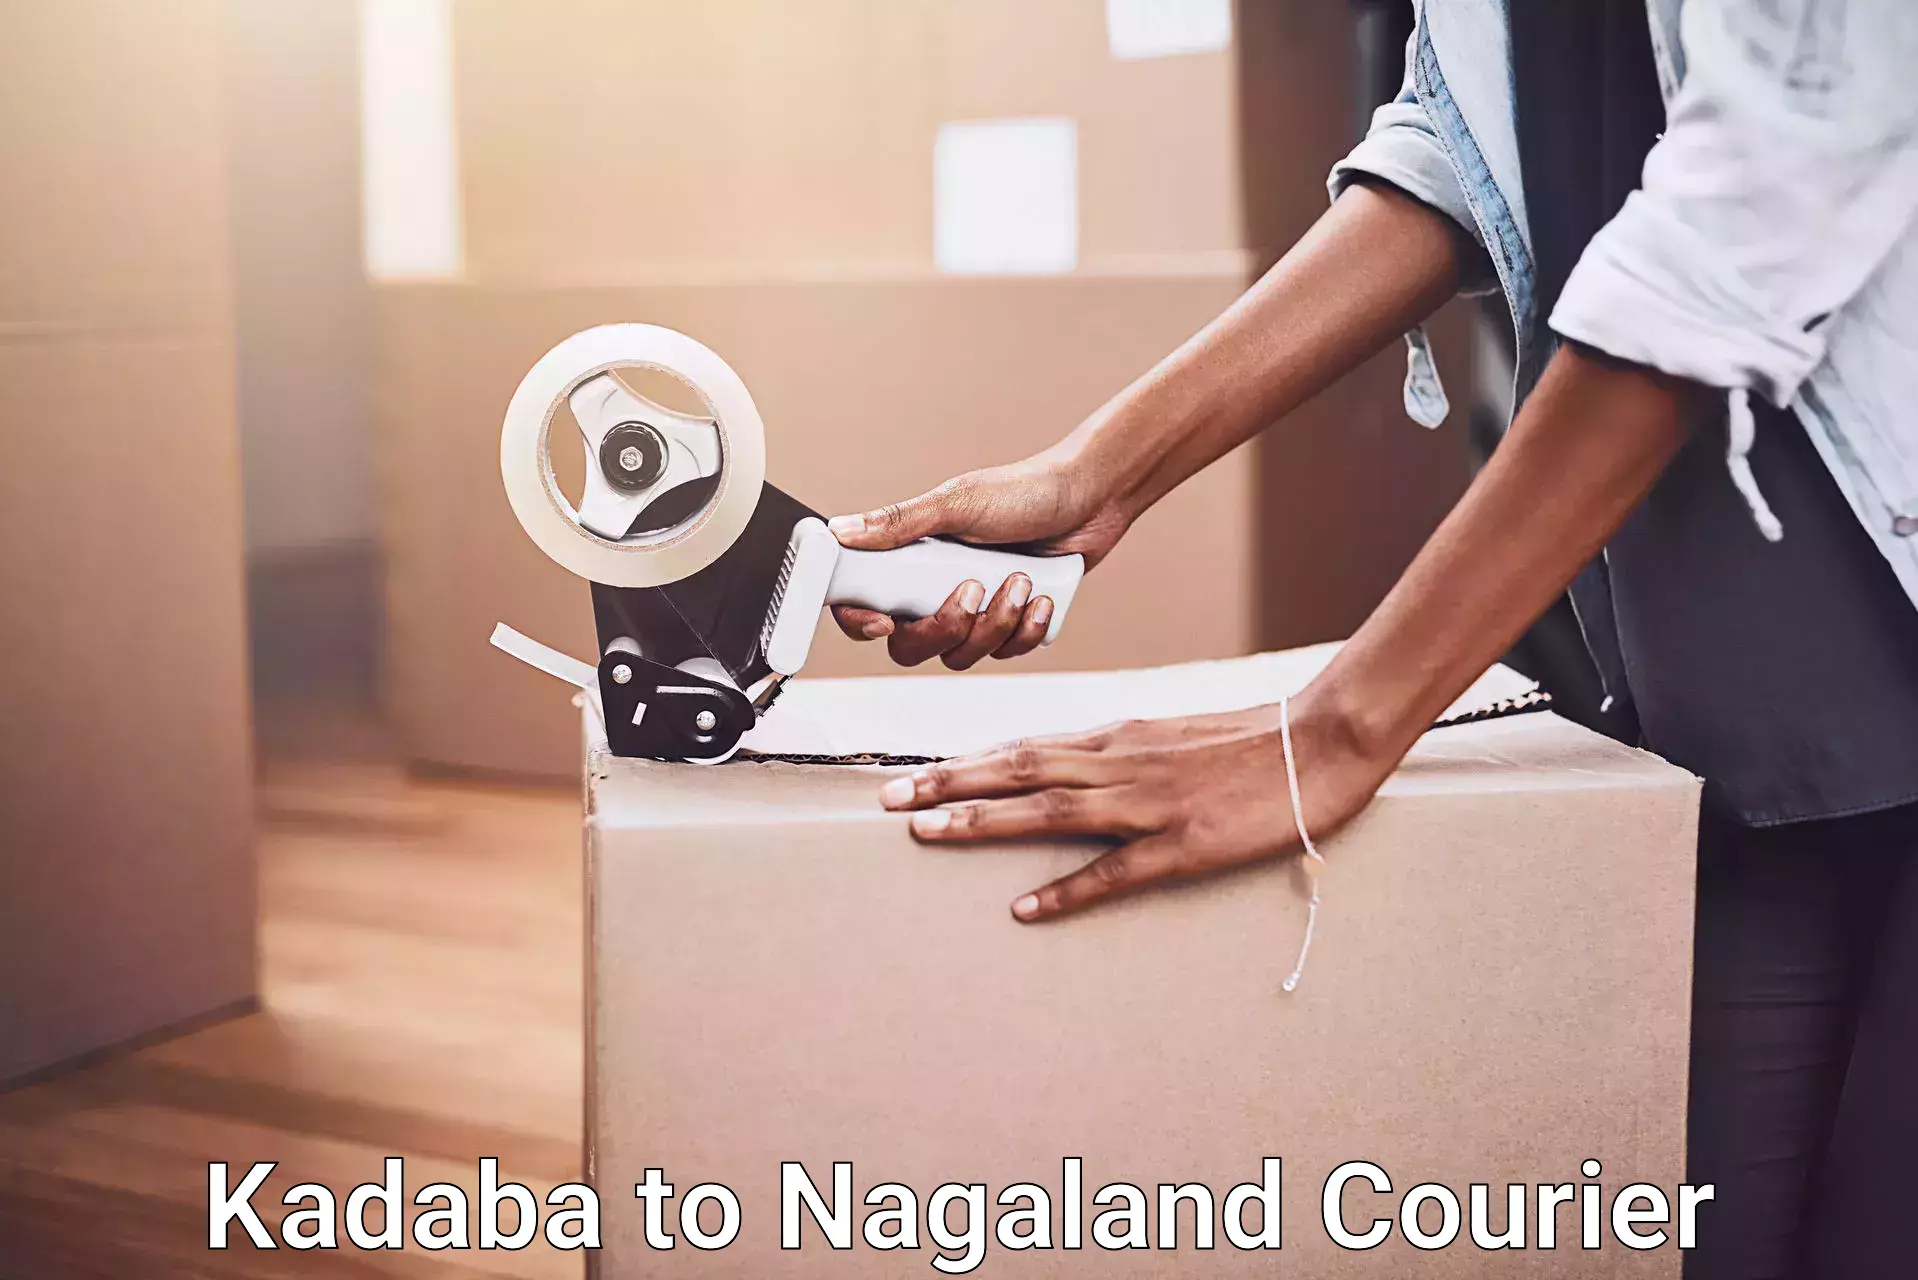 Furniture transport and logistics Kadaba to Nagaland